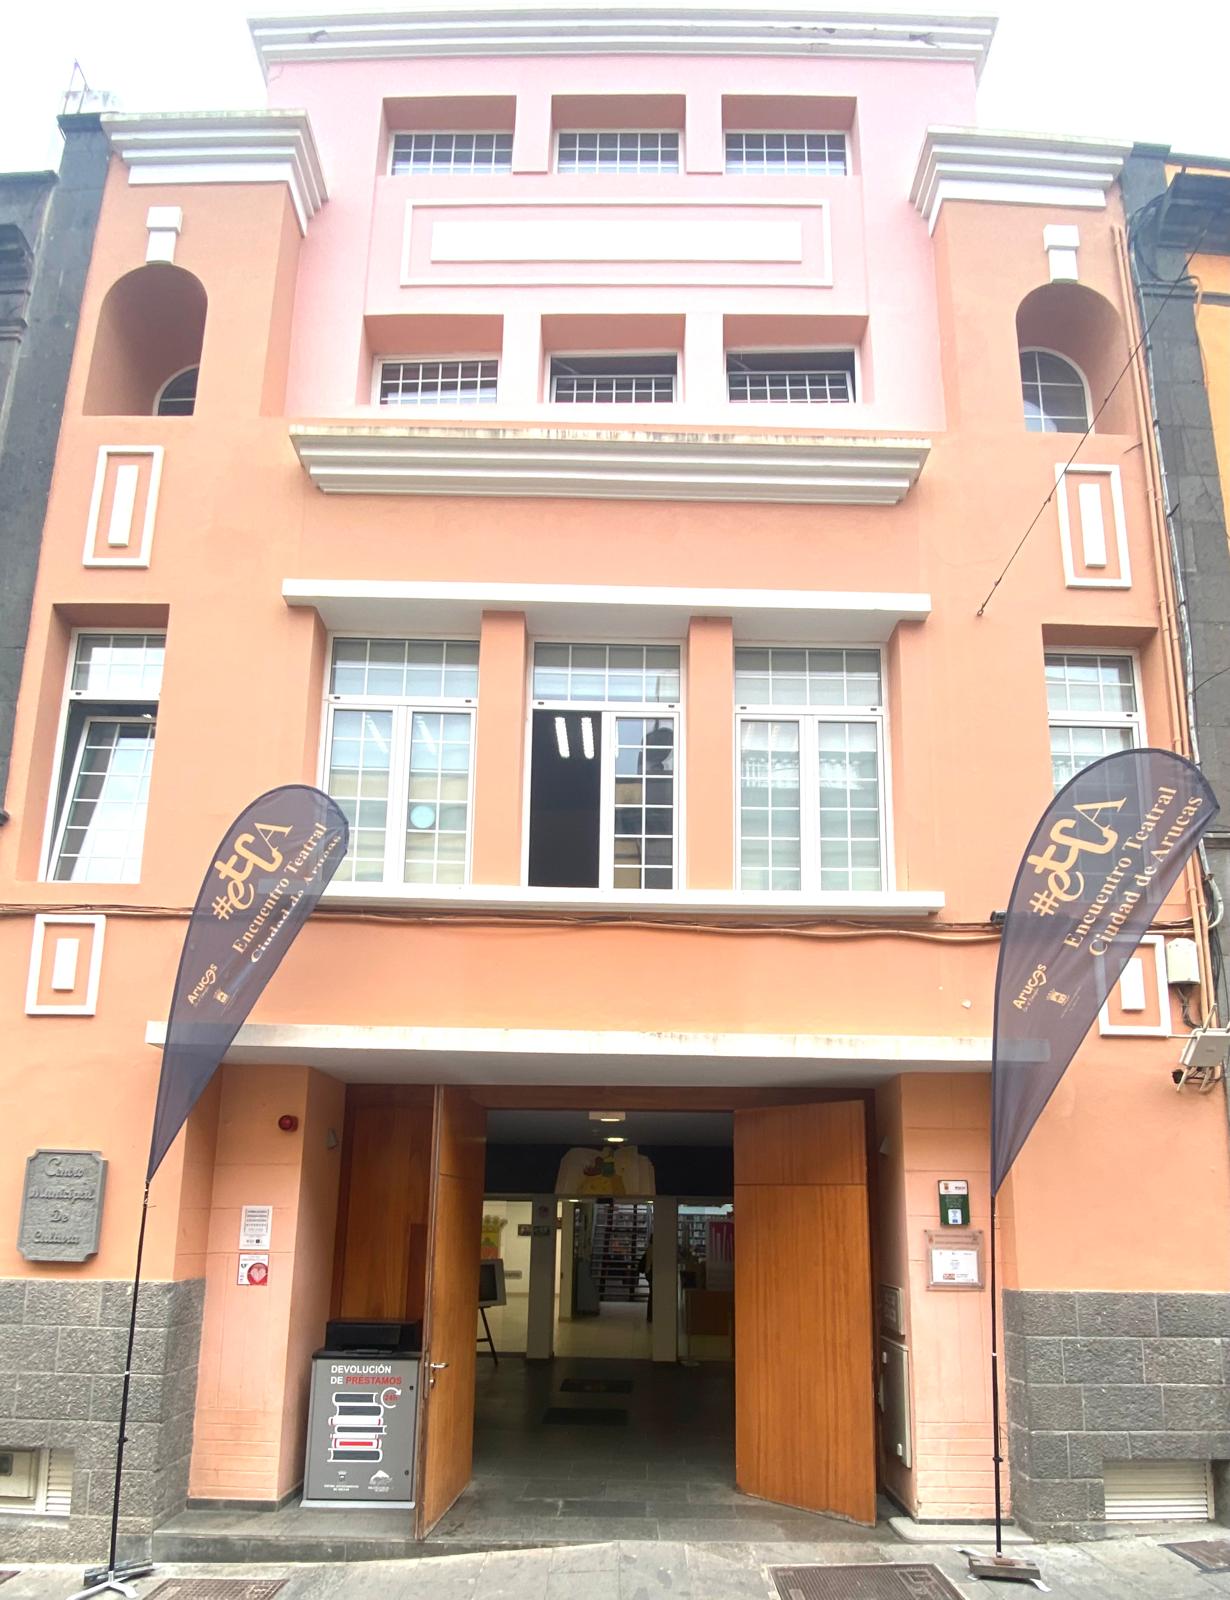 El Ayuntamiento de Arucas adjudica contrato a la Sociedad Mercantil Kone Elevadores S.A. para el servicio de mantenimiento y reparación de los ascensores y aparatos elevadores instalados en sus edificios públicos